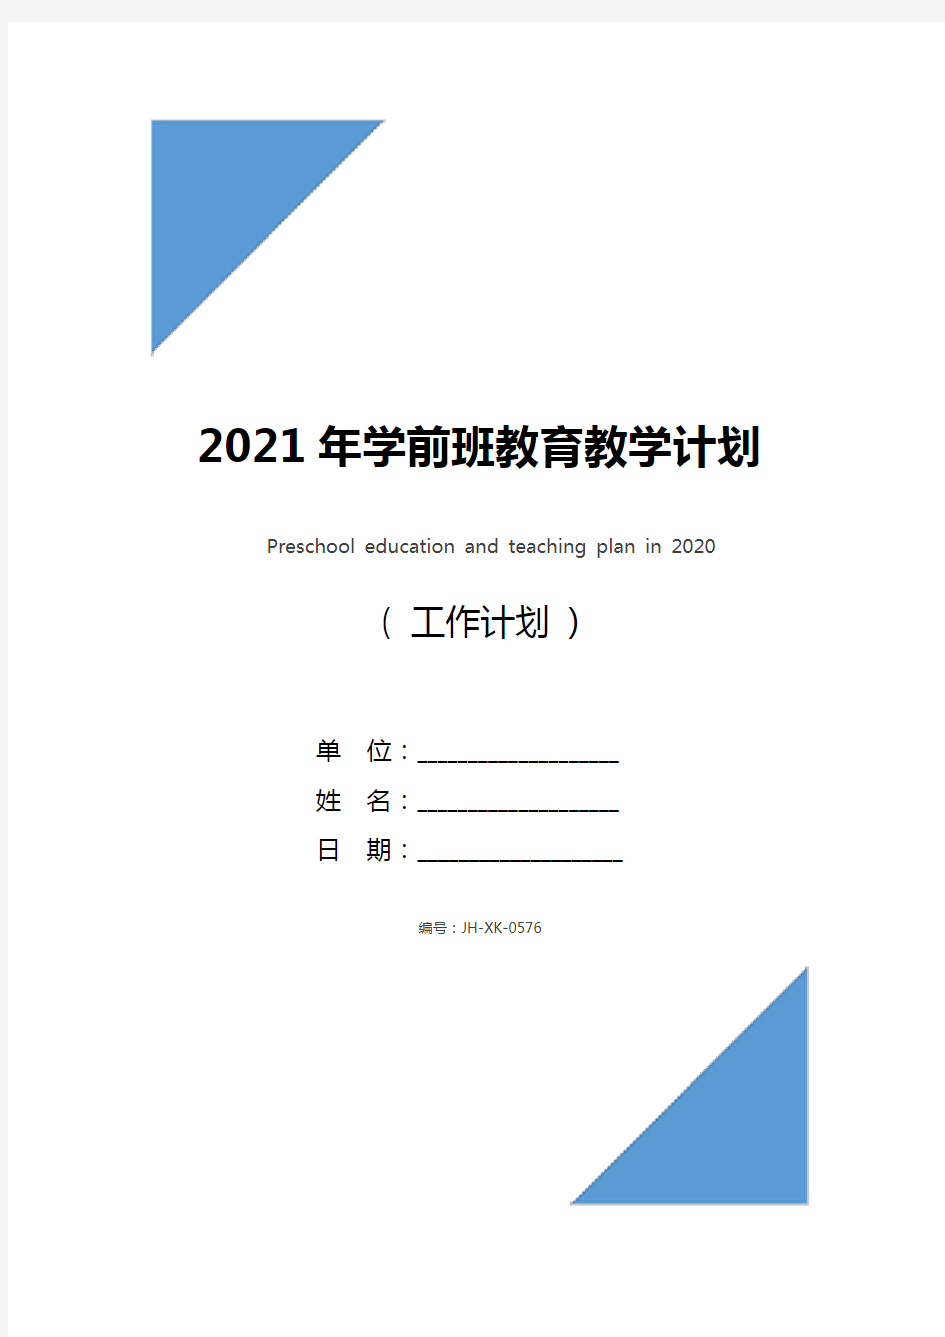 2021年学前班教育教学计划(新版)